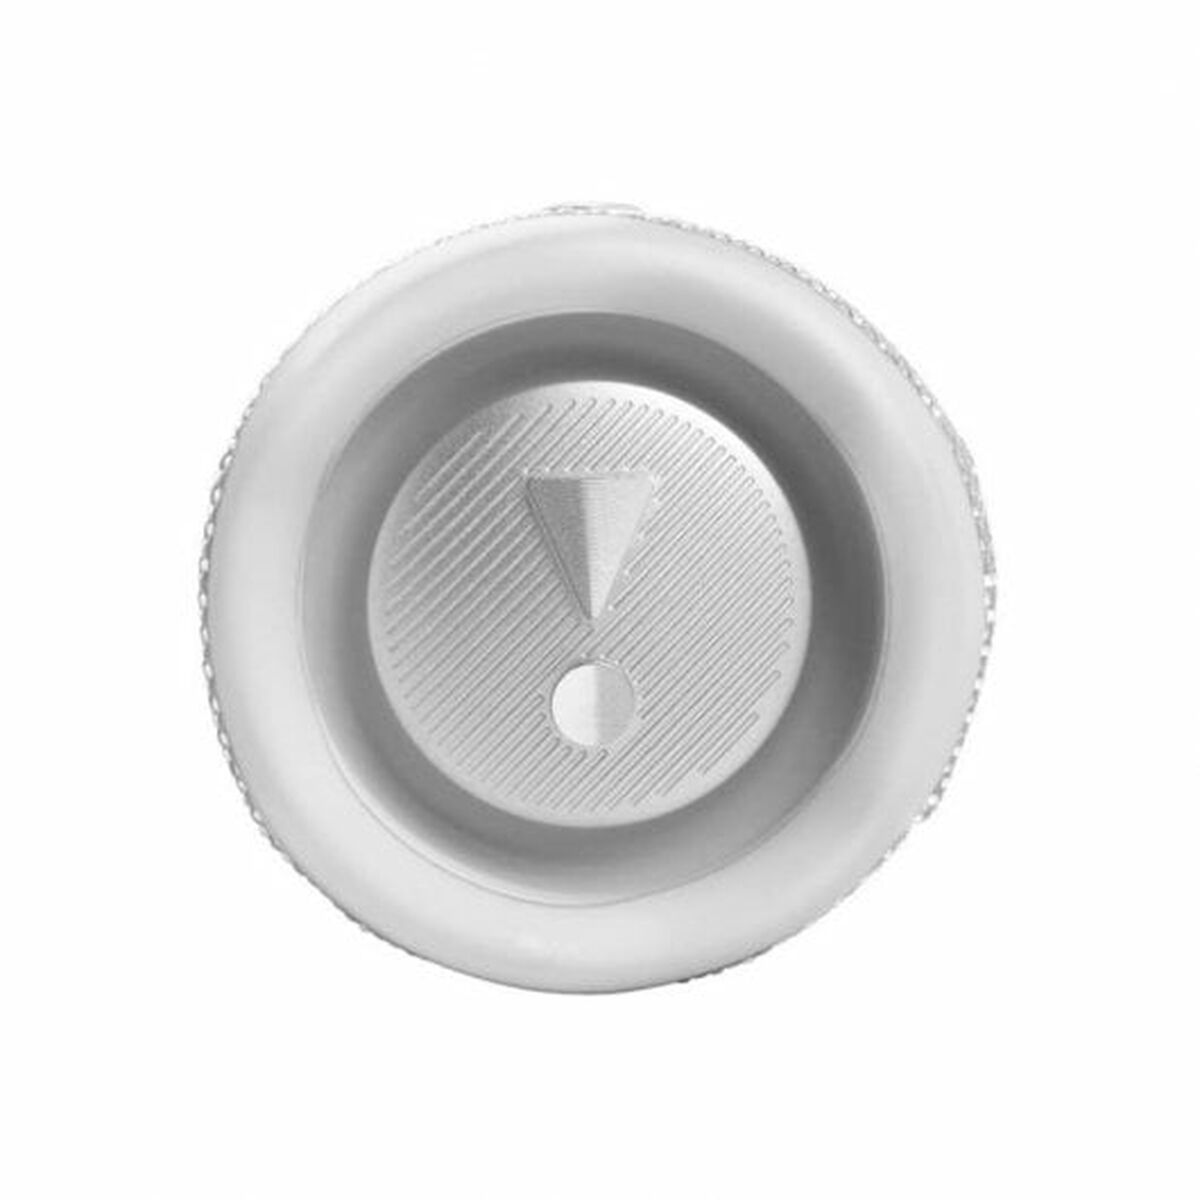 Kaufe Tragbare Bluetooth-Lautsprecher JBL Flip 6 Weiß bei AWK Flagship um € 196.00